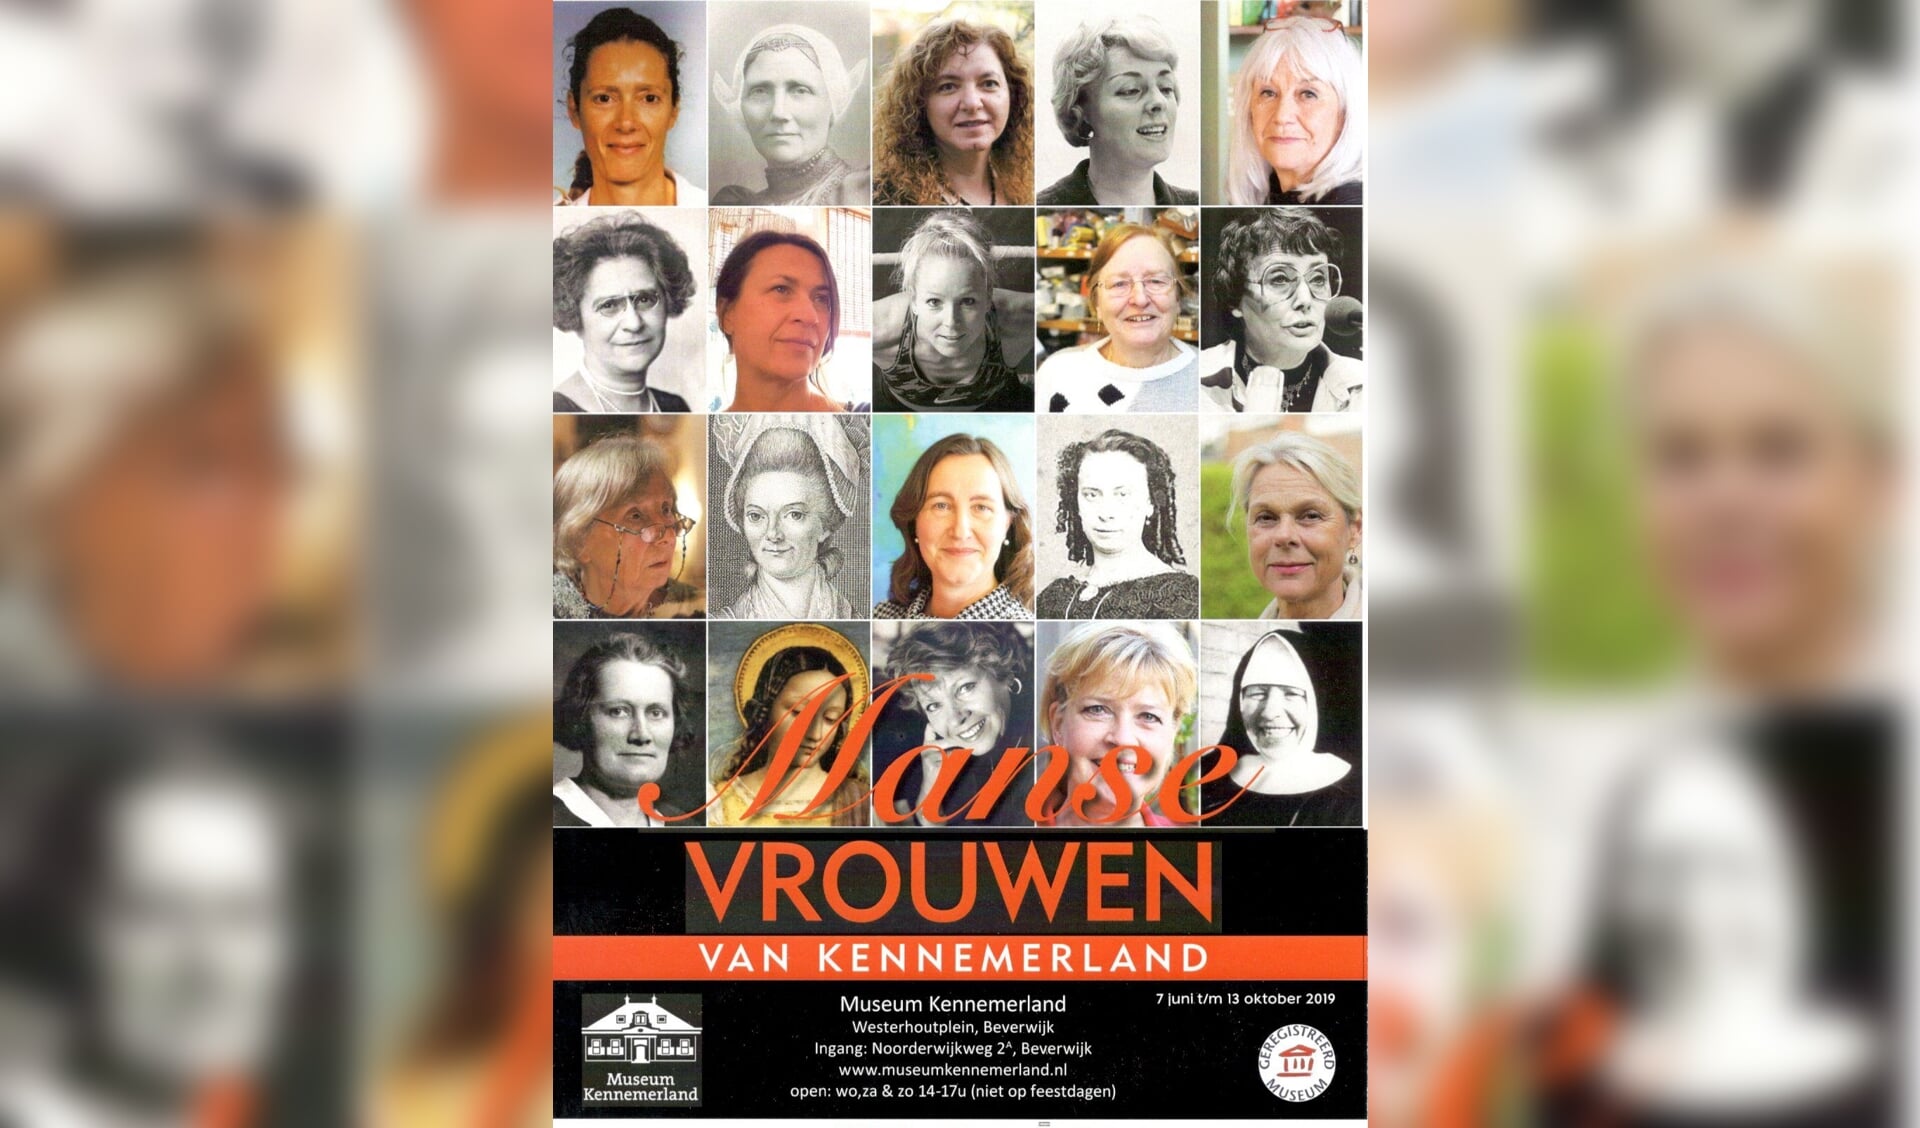 Honderd jaar na het vrouwenkiesrecht zet Museum Kennemerland de vrouw op een voetstuk.